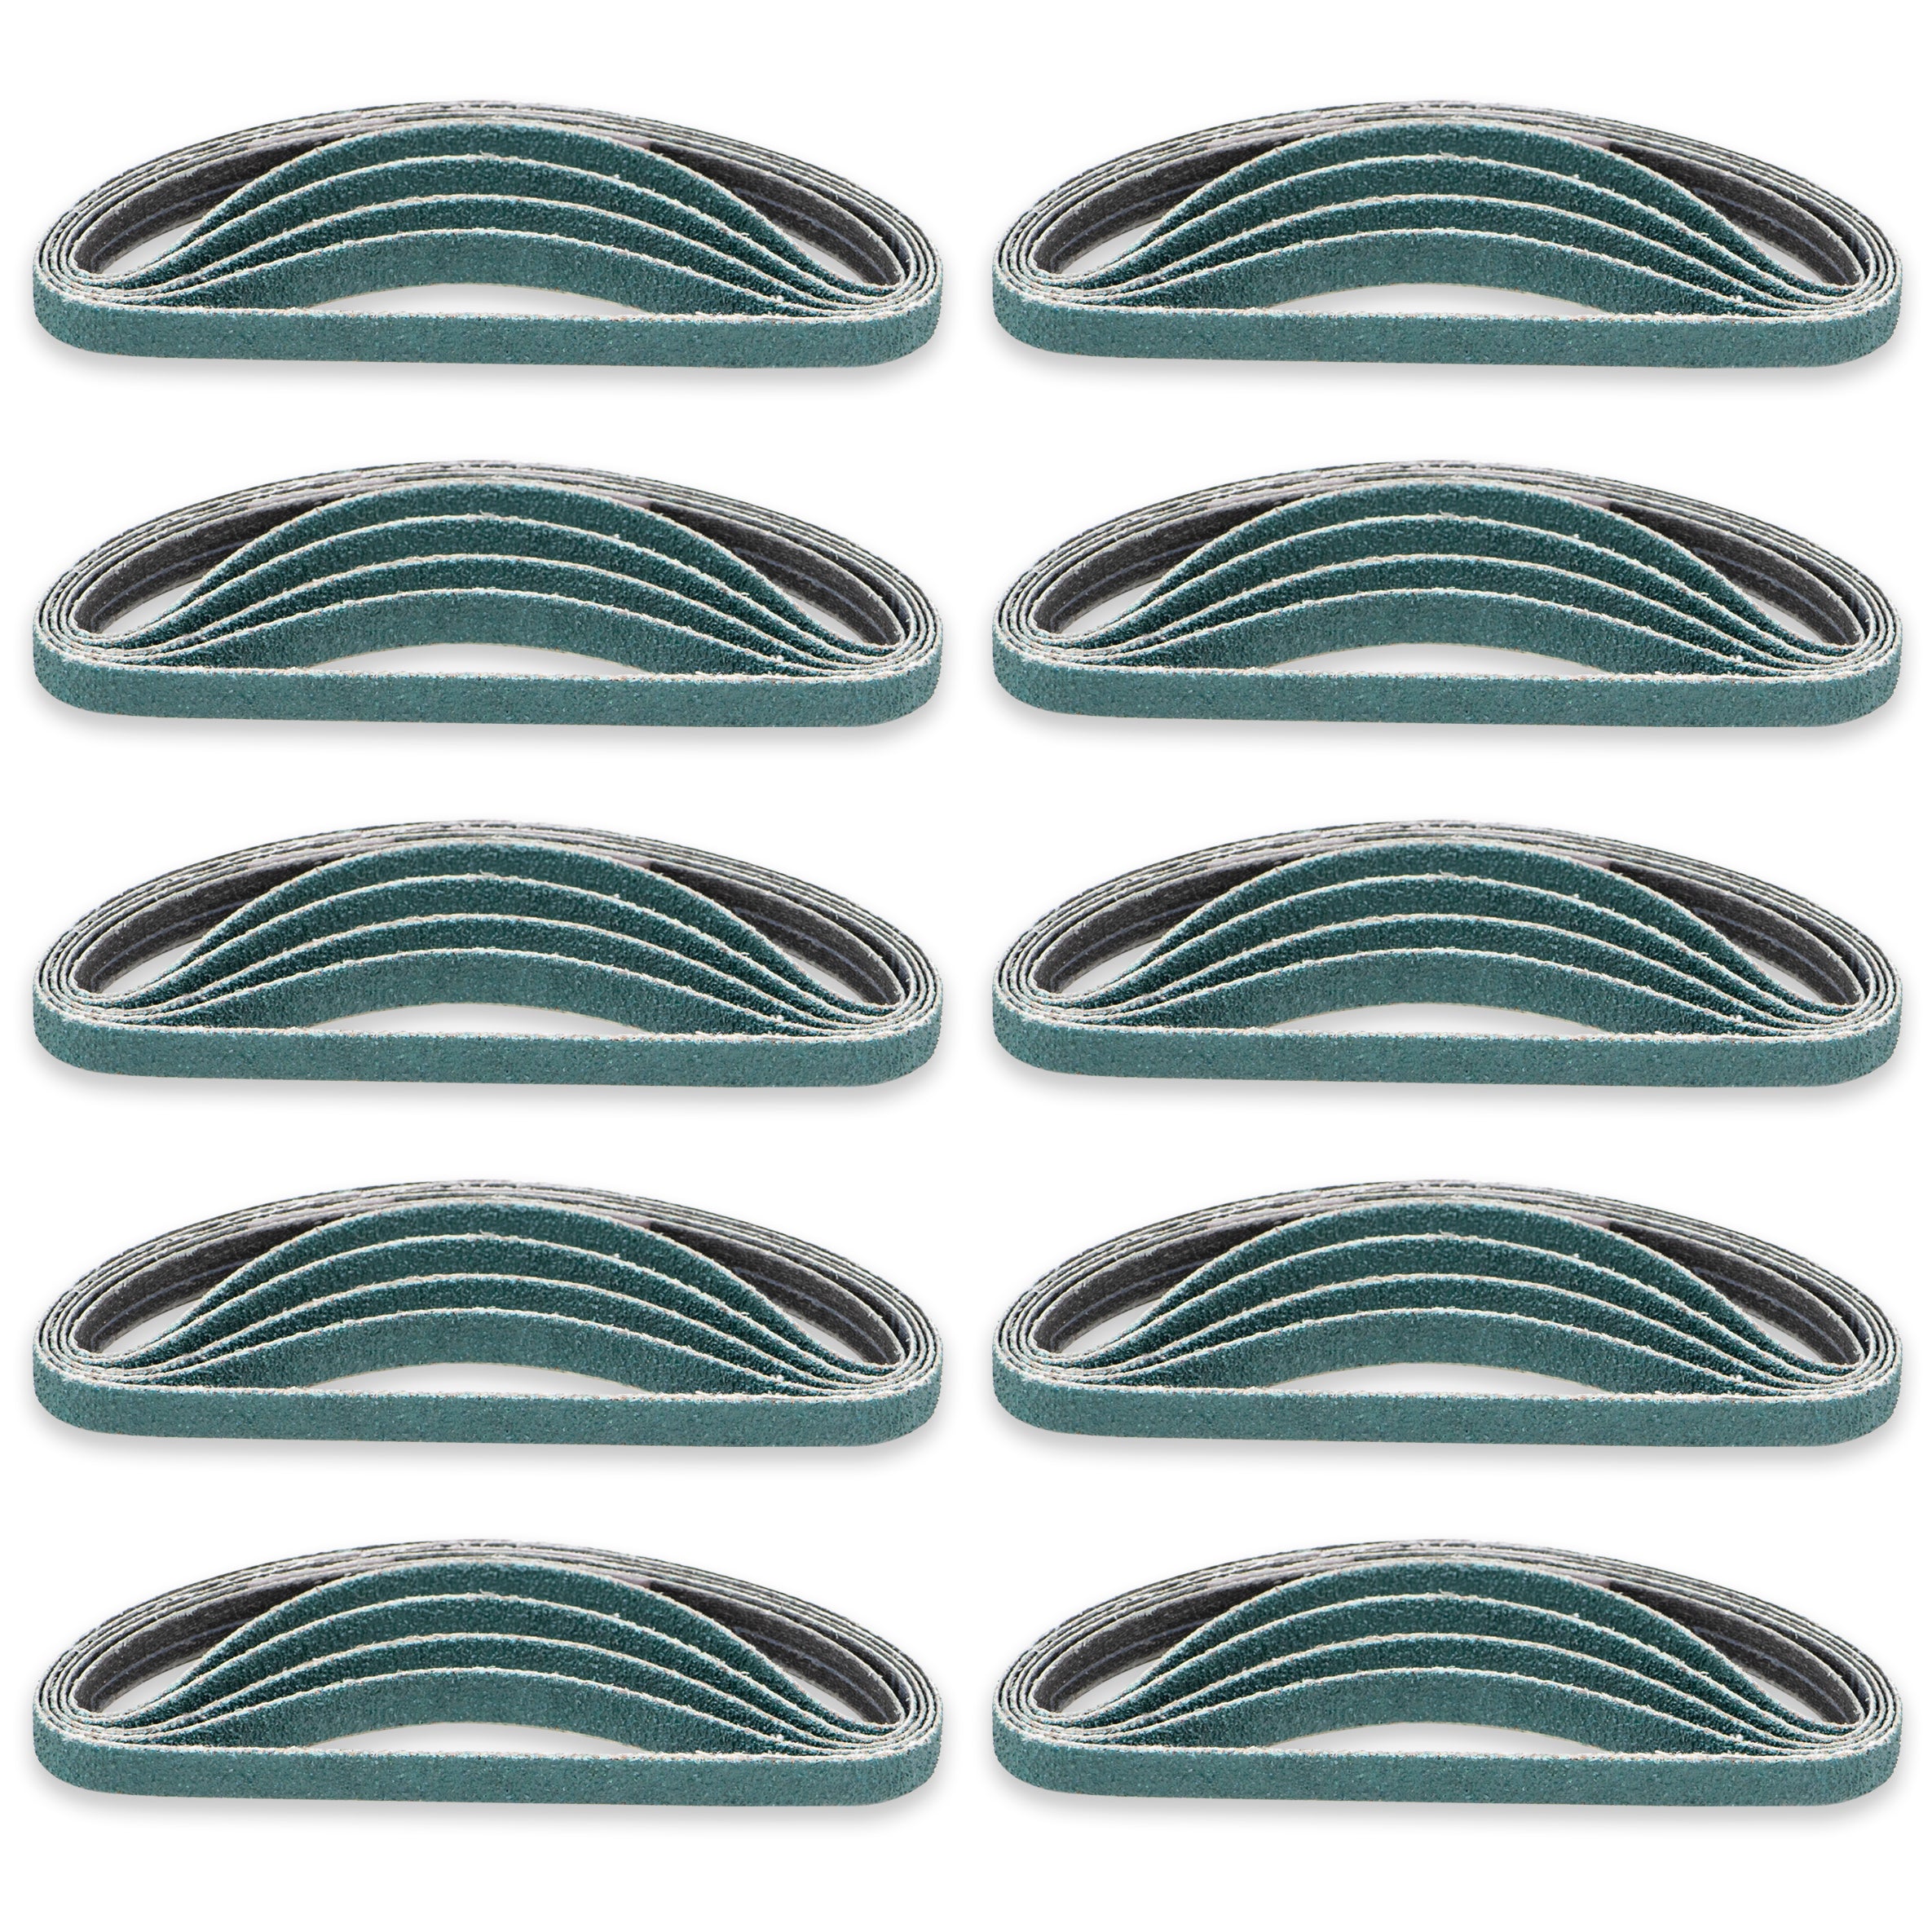 3/8” x 13” - 60 Grit Zirconia Sanding Belt for Air Sanders